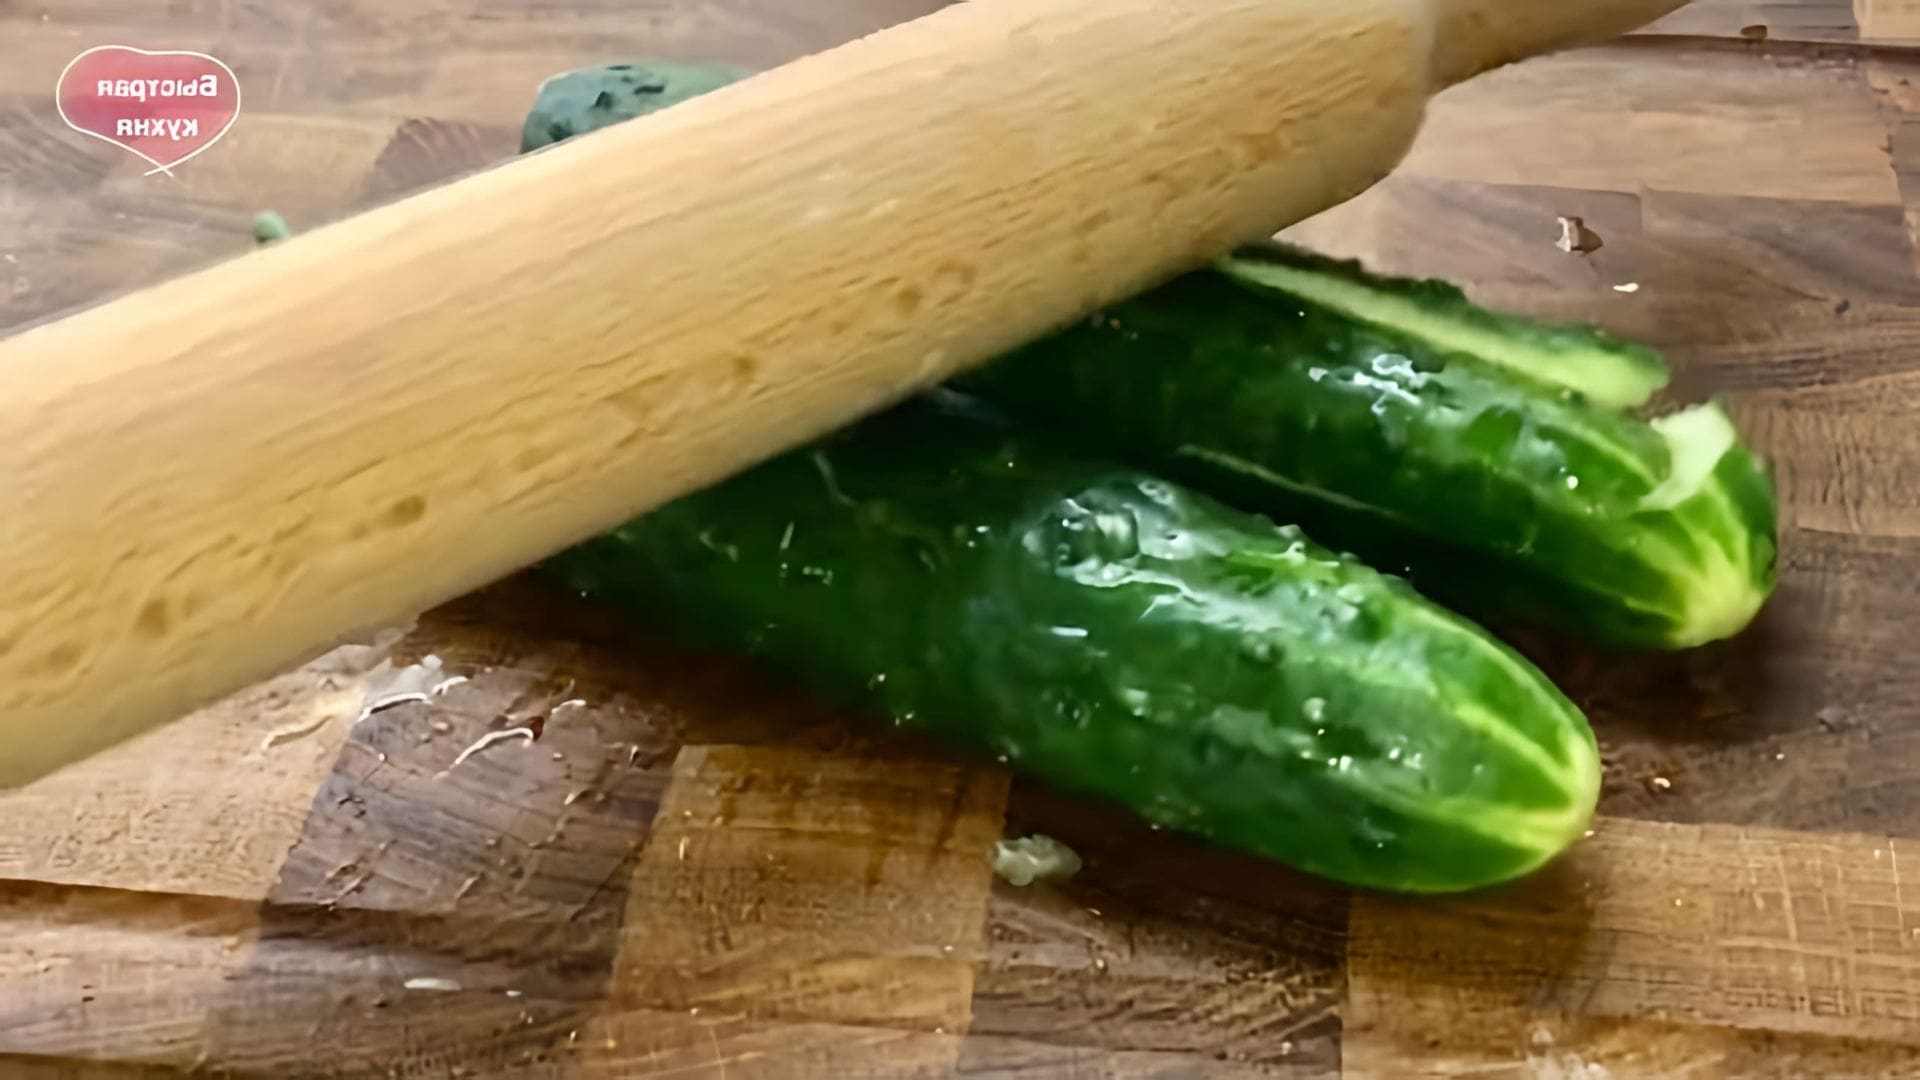 В этом видео демонстрируется процесс приготовления битых огурцов - популярной закуски, которая стала очень популярной в последнее время